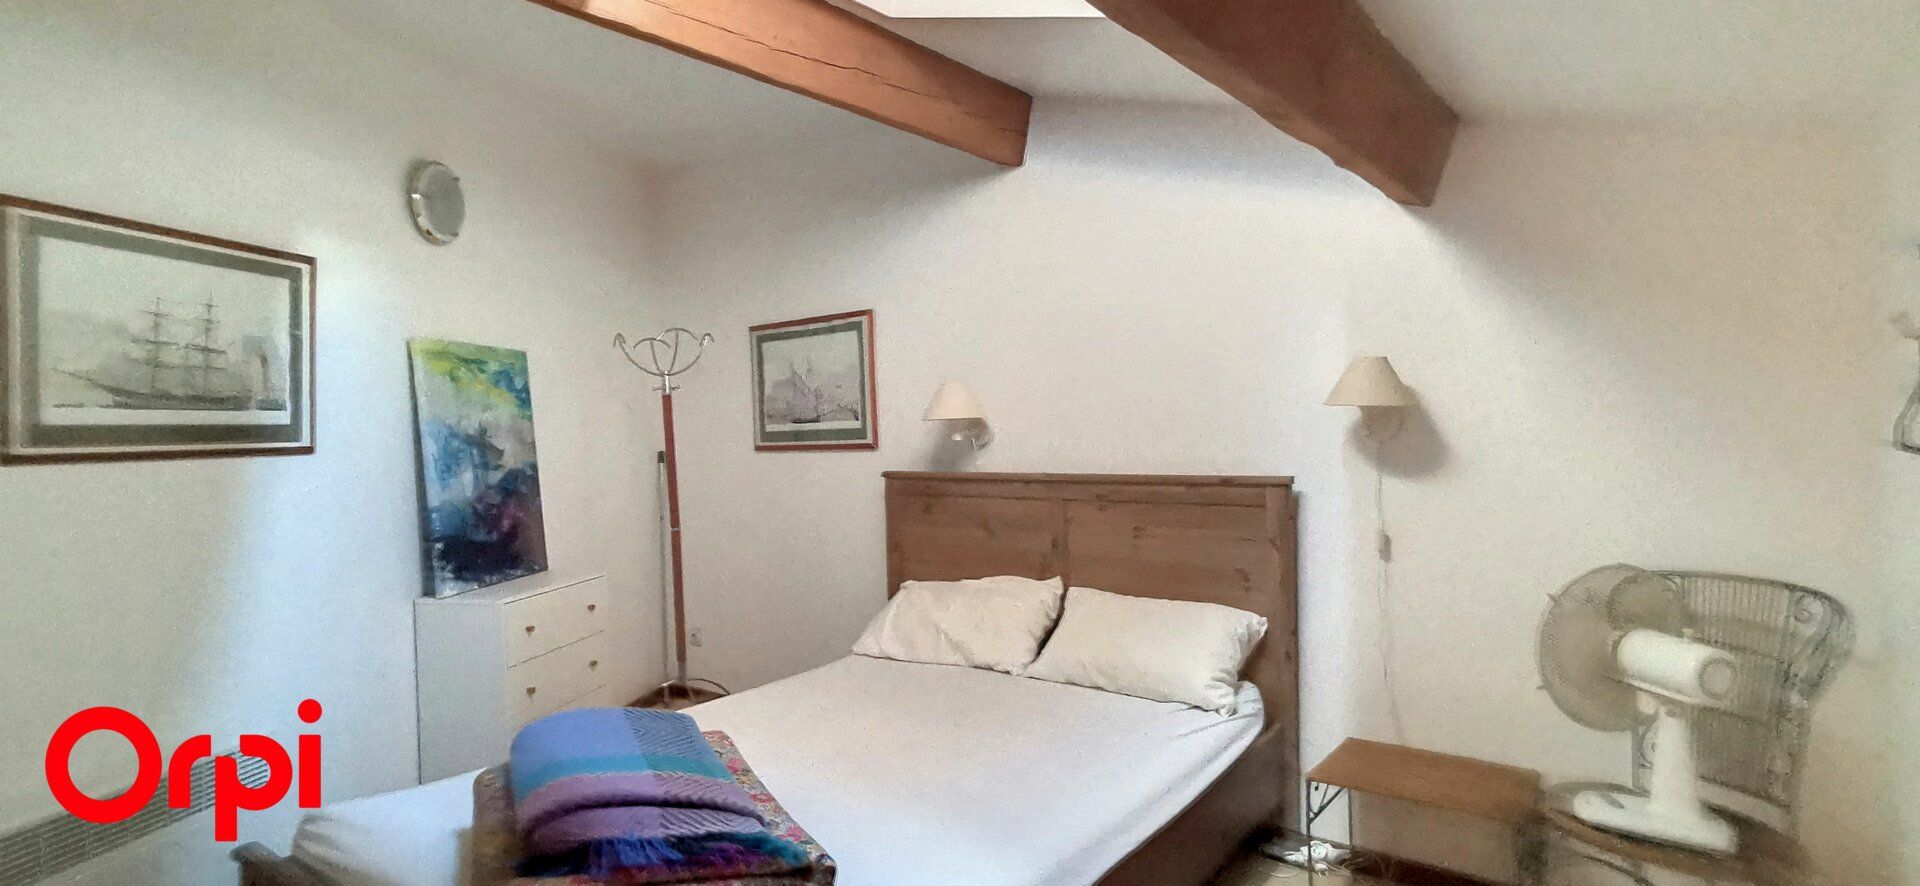 Appartement à vendre 3 57m2 à La Cadière-d'Azur vignette-7